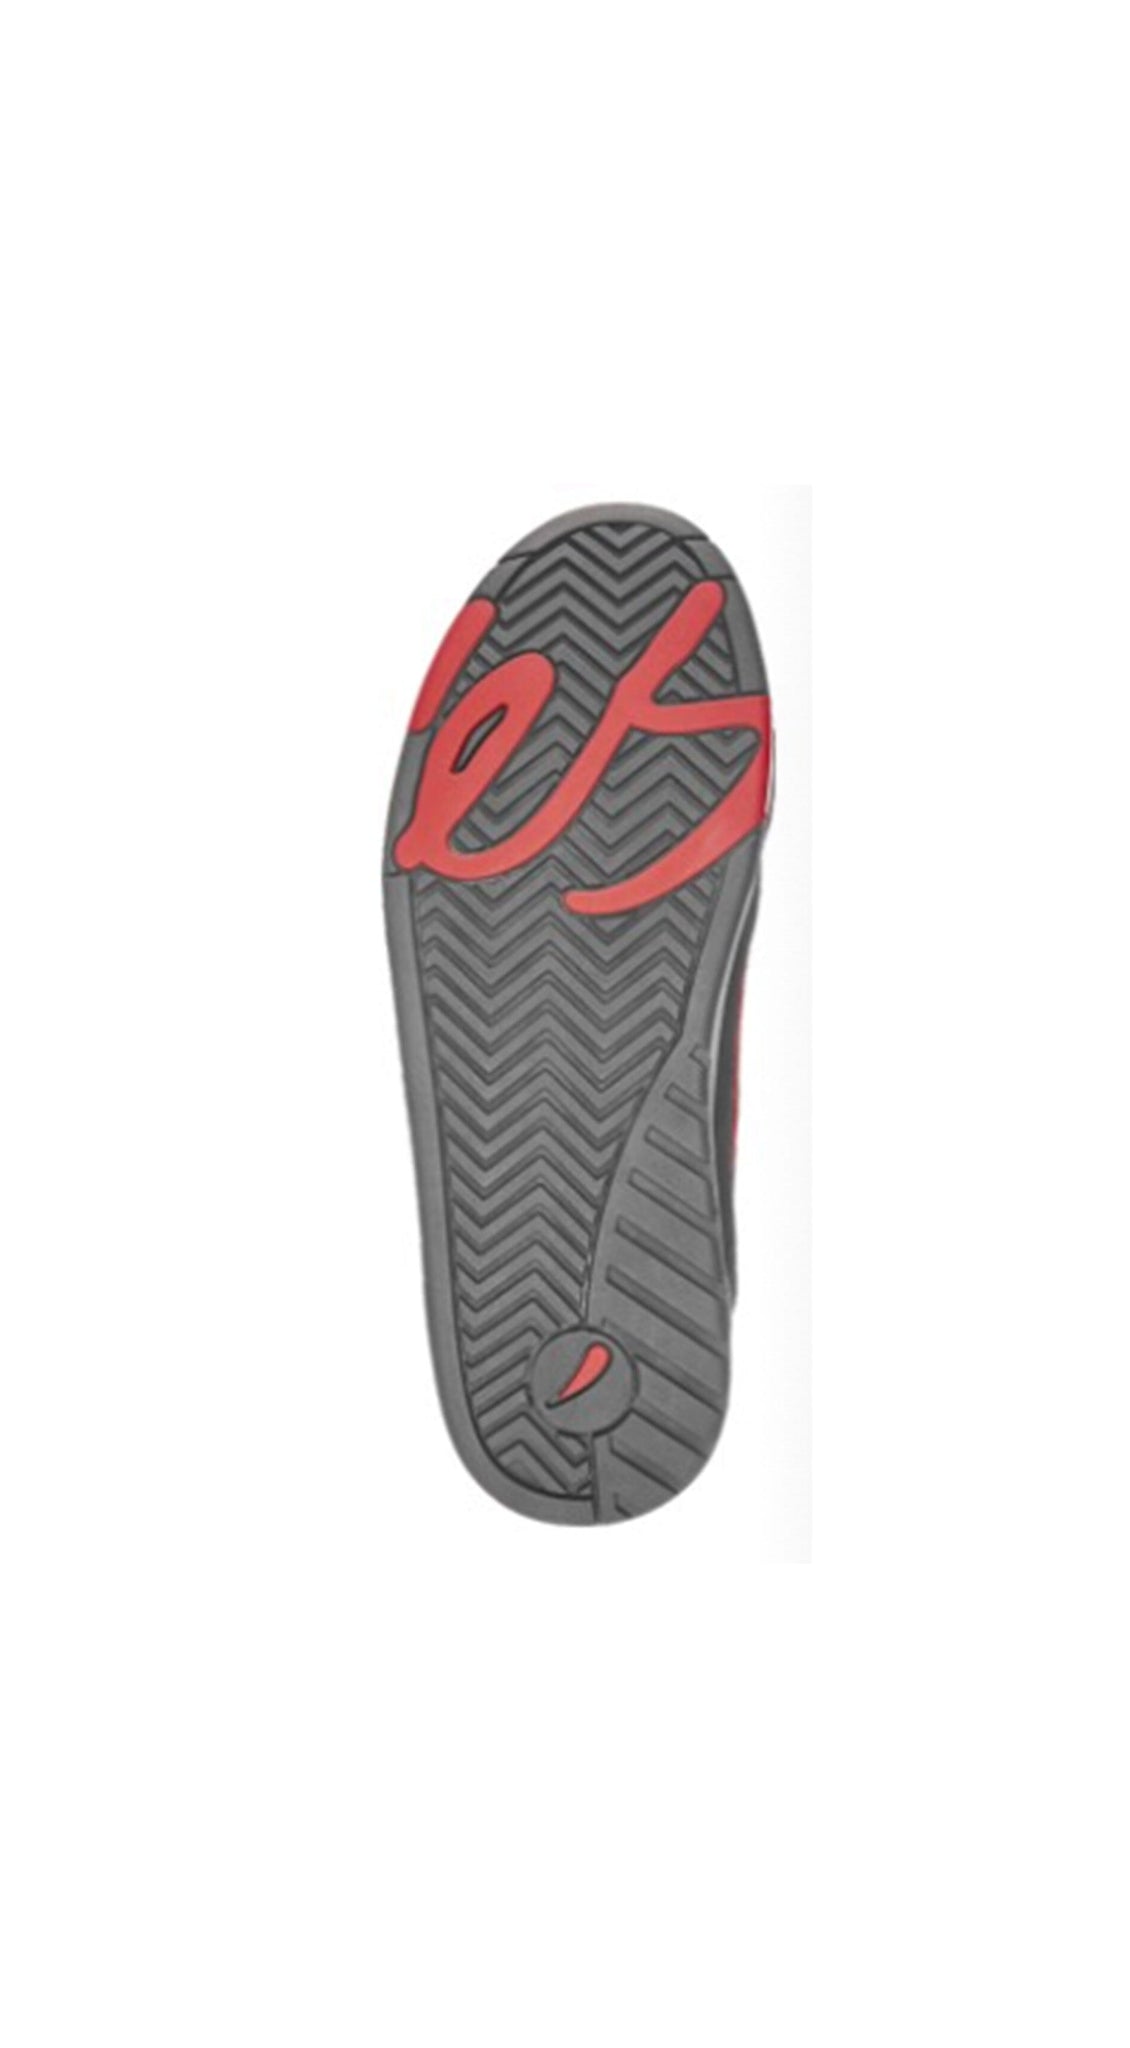 éS The Muska Shoes Black Red -Zapatillas- Prebook Zapas eS Skateboarding 